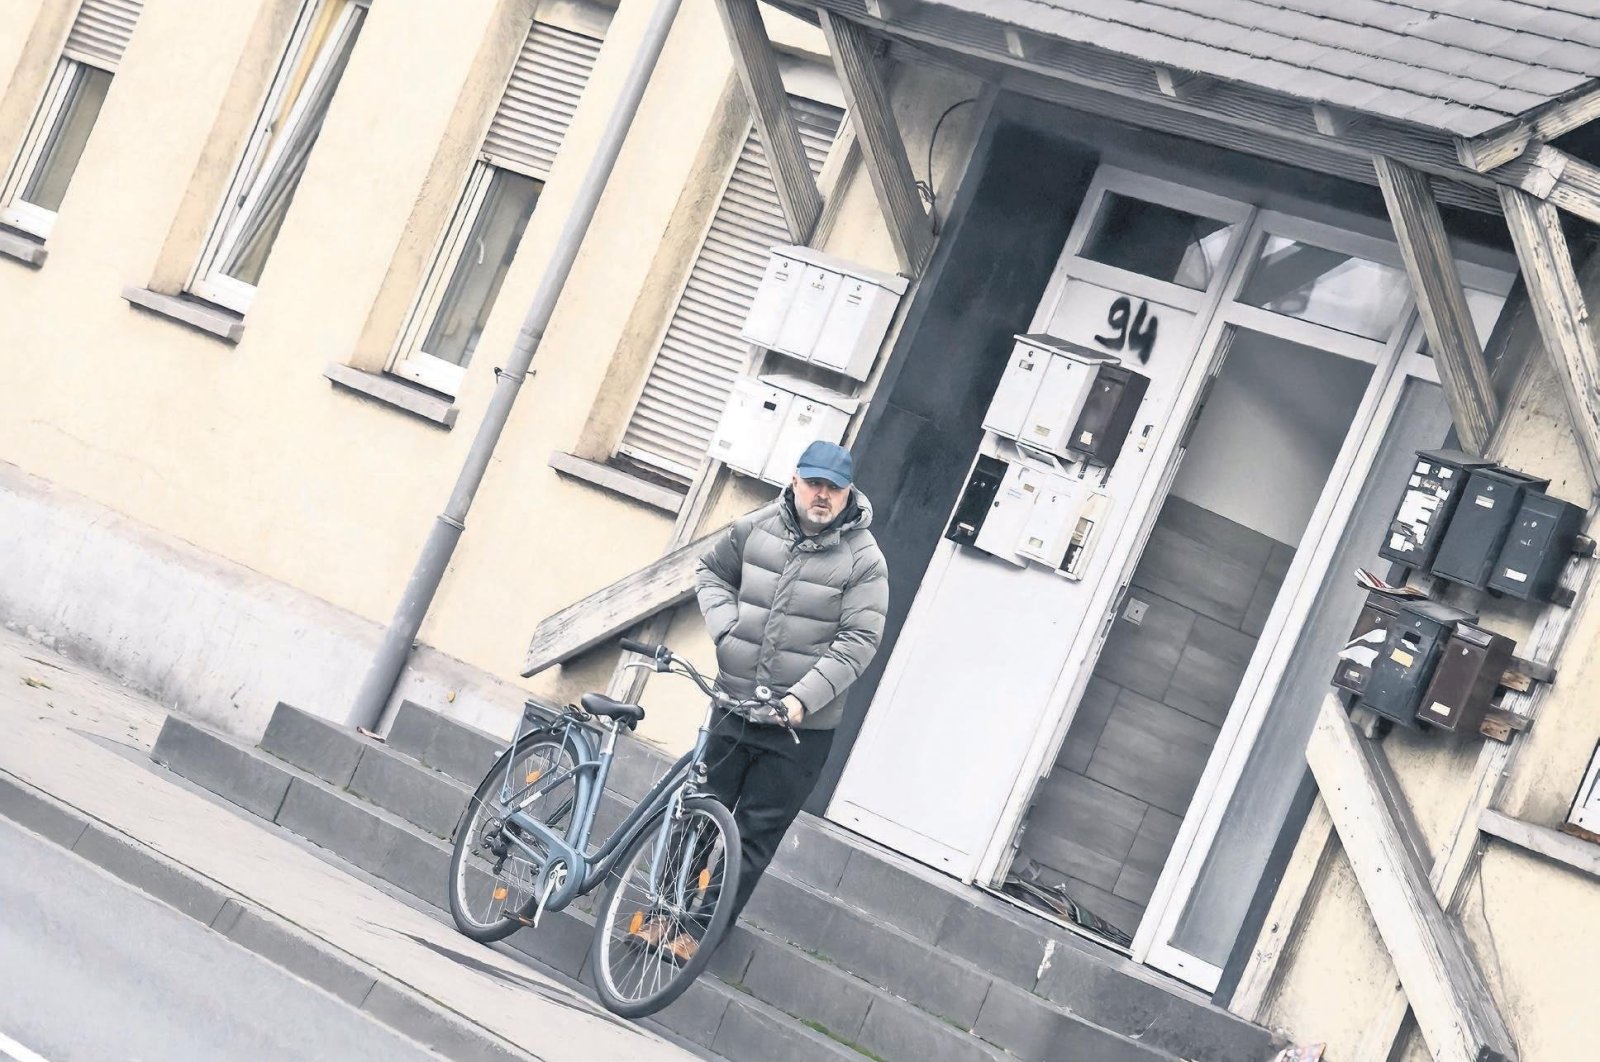 Mehmet Karabörk leaves his home in Wetzlar, Germany in this undated photo. (Photo by Abdurrahman Şimşek) 